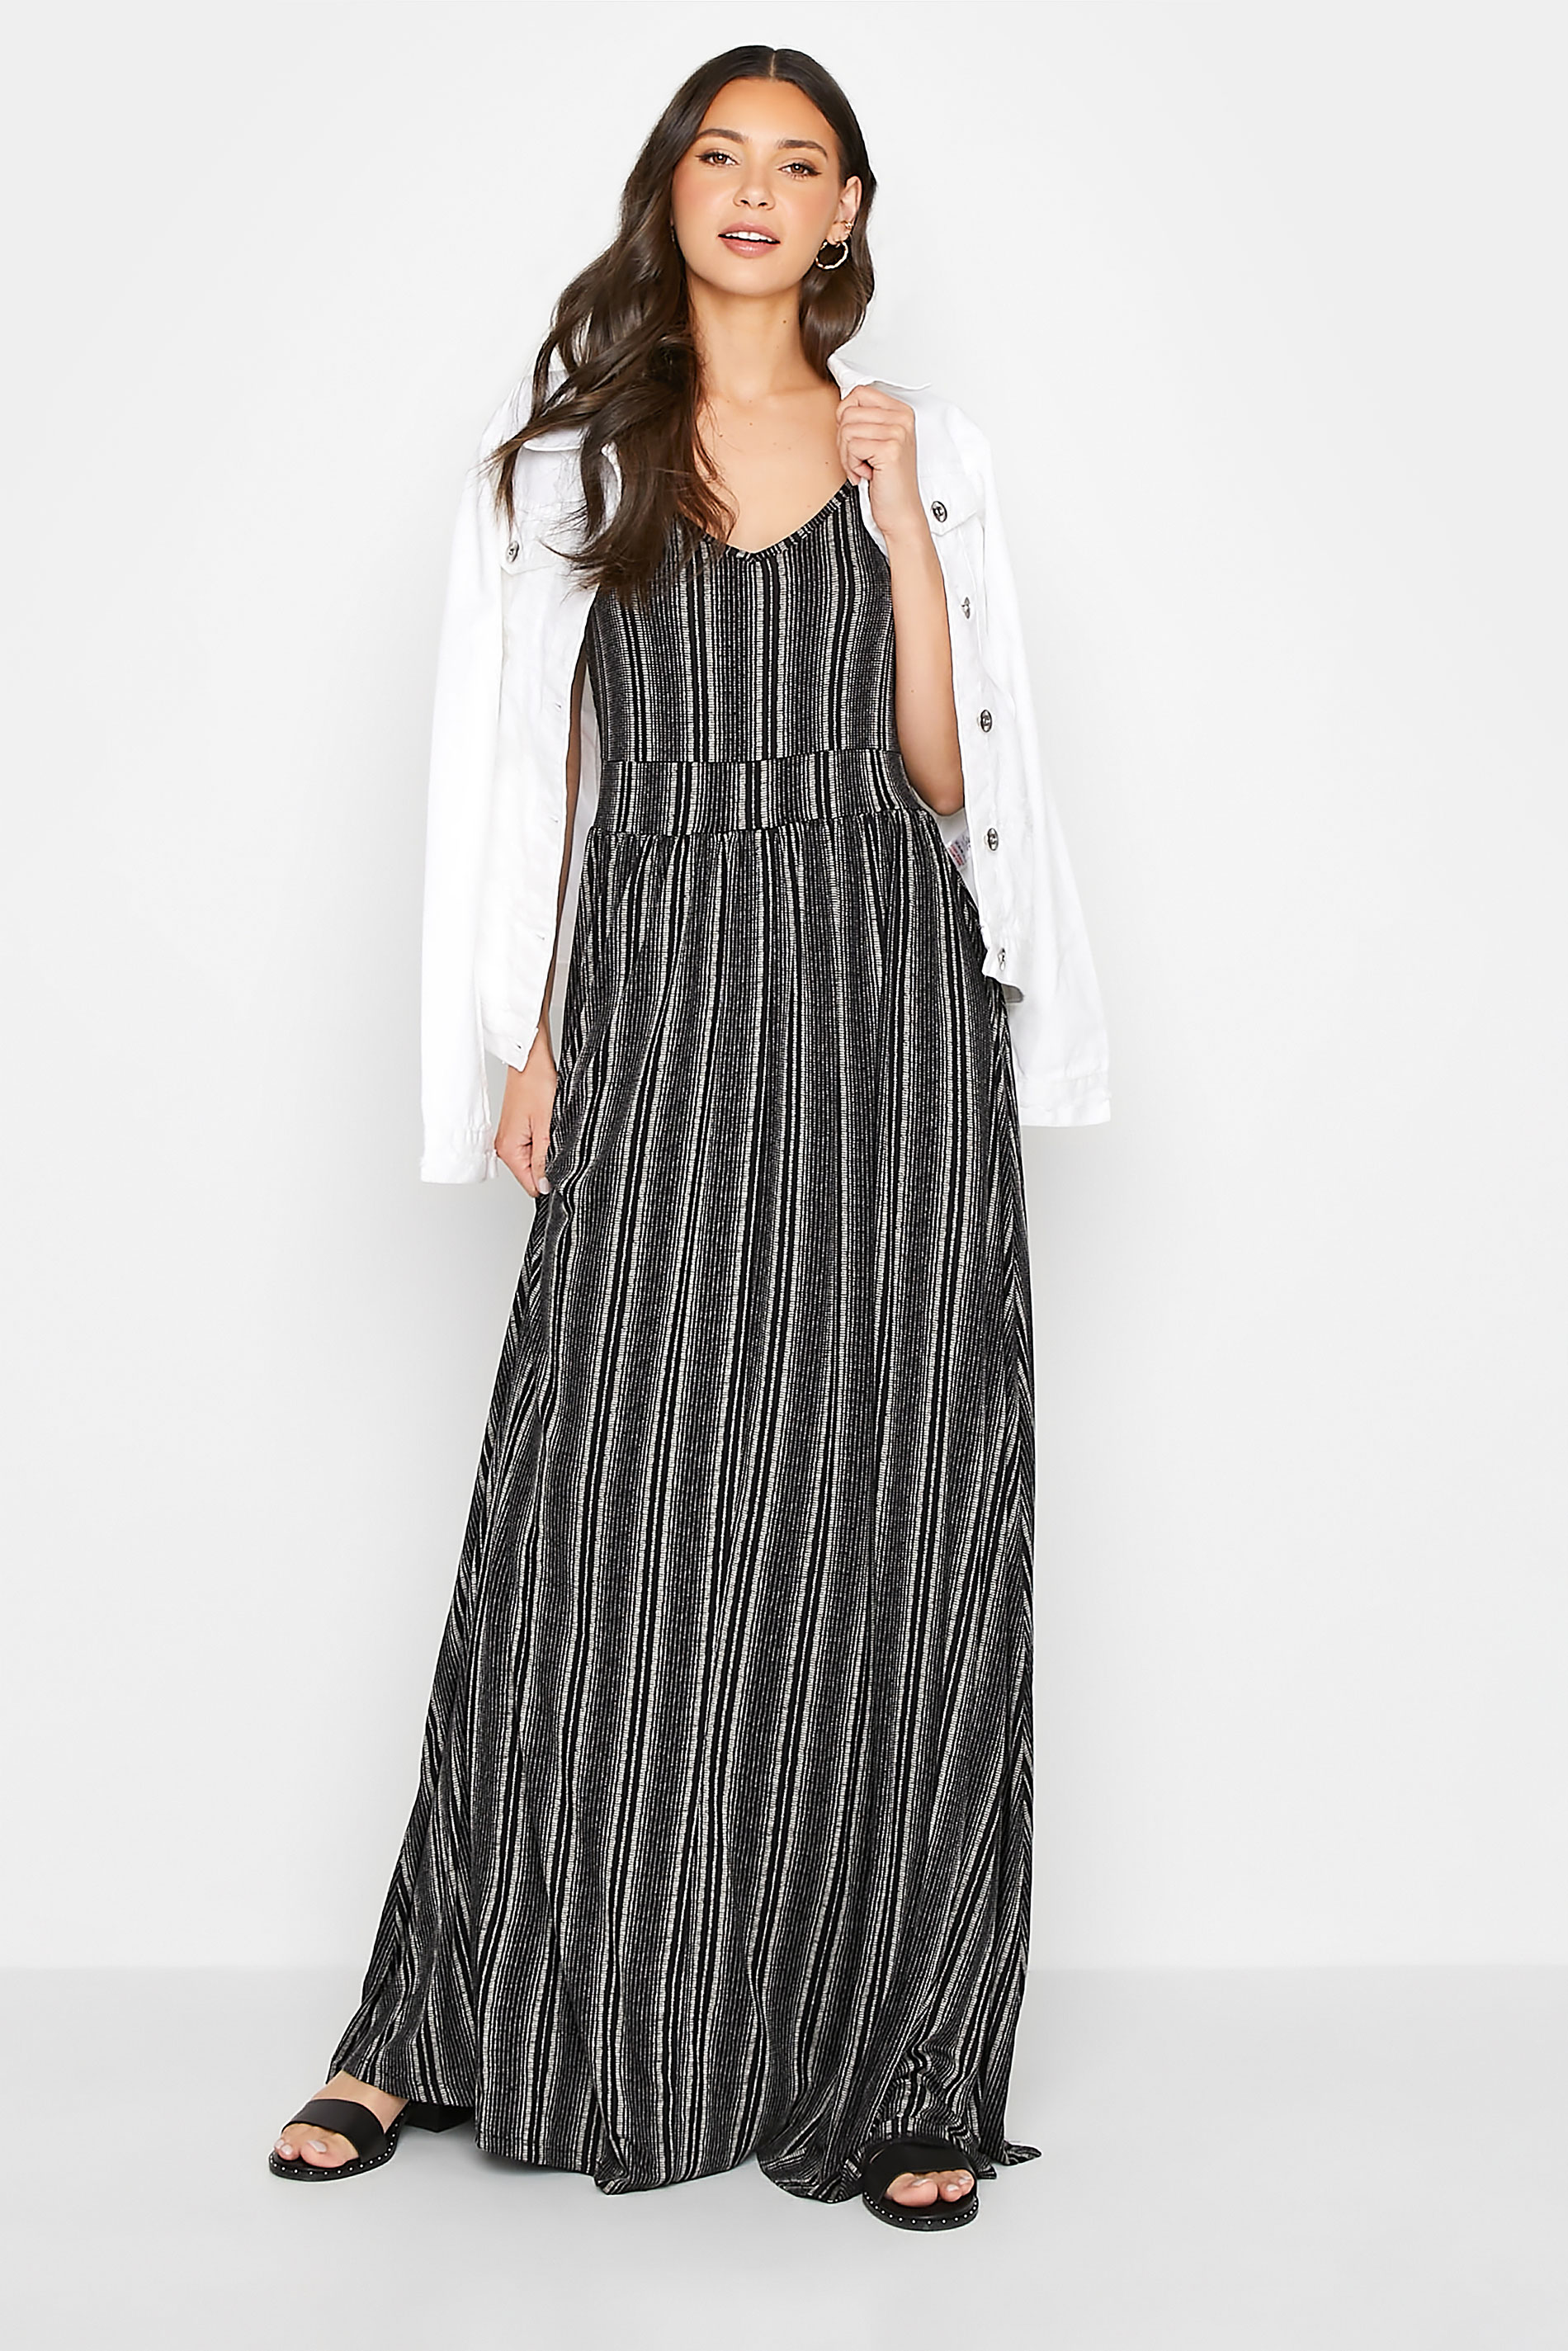 LTS Tall Black Striped Maxi Dress | Long Tall Sally 2